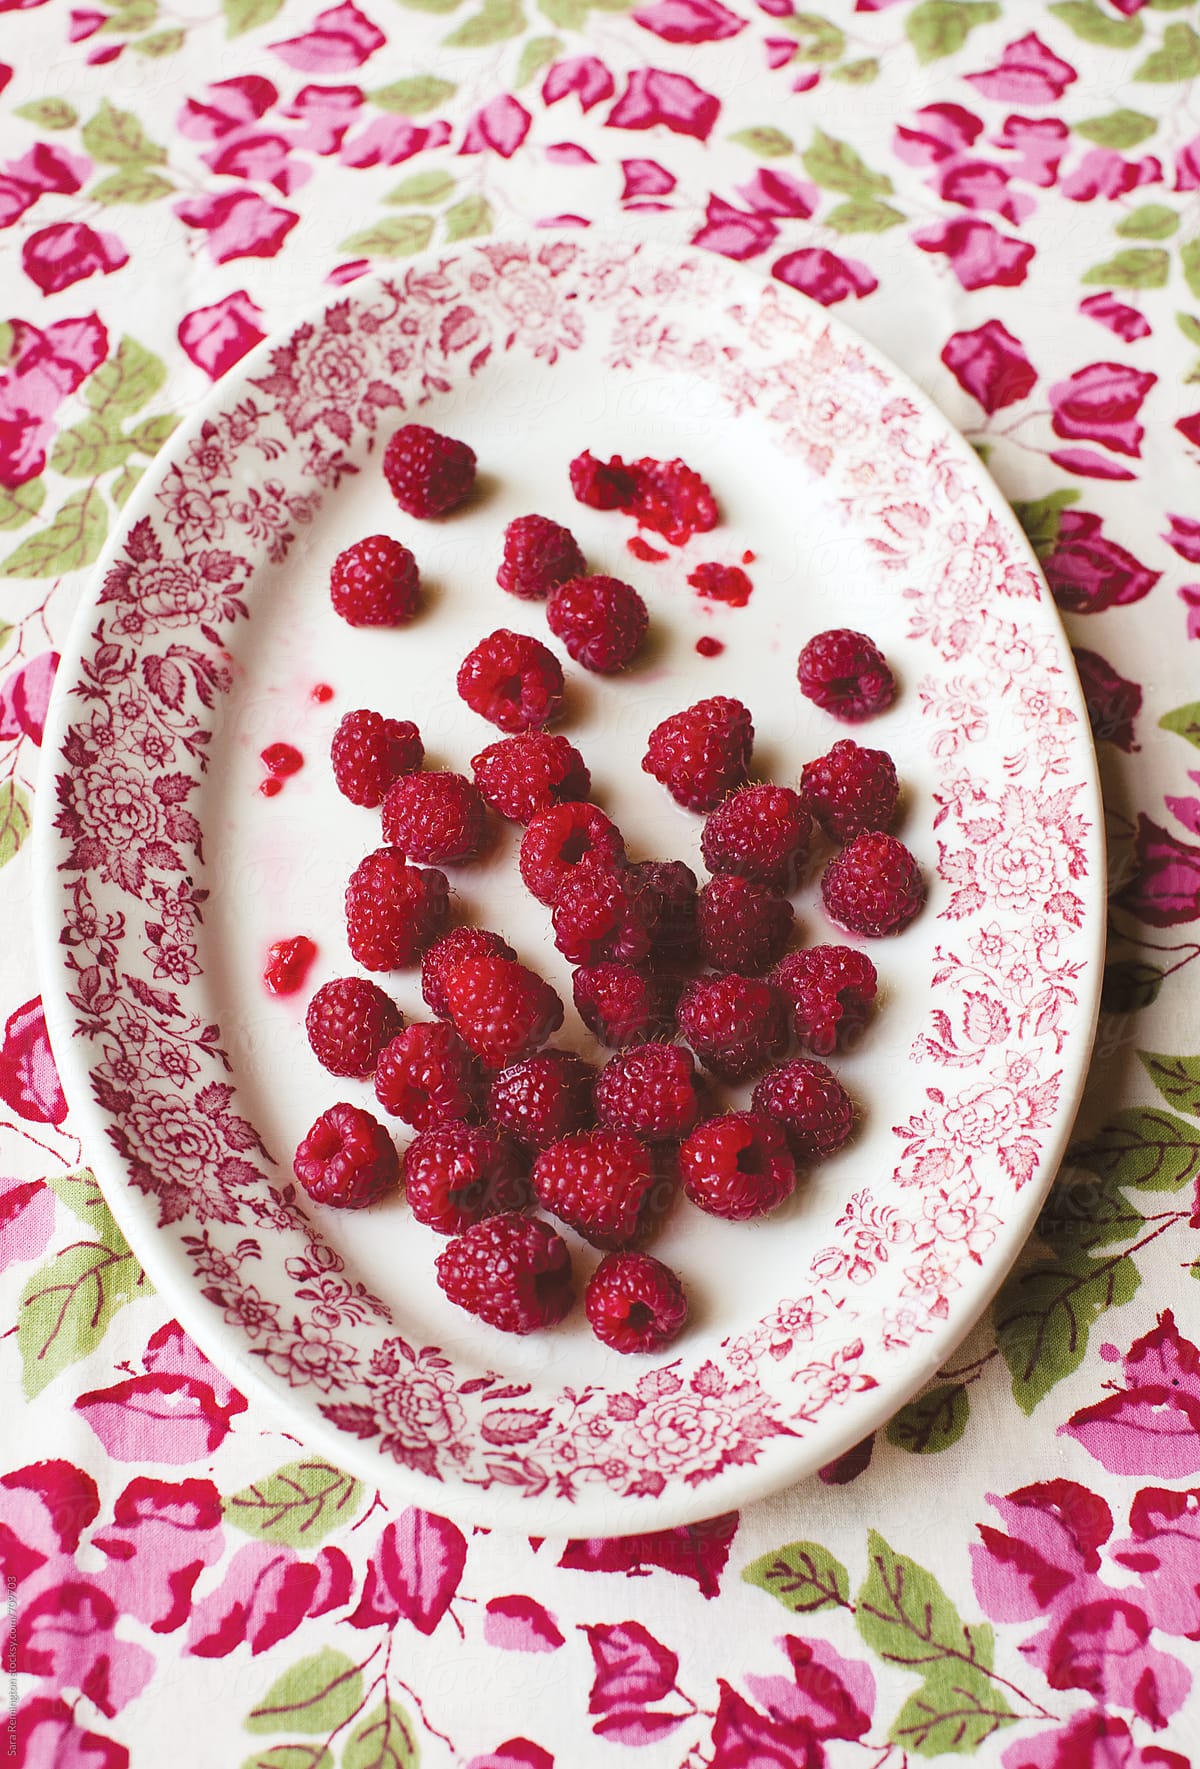 Raspberries on Platter